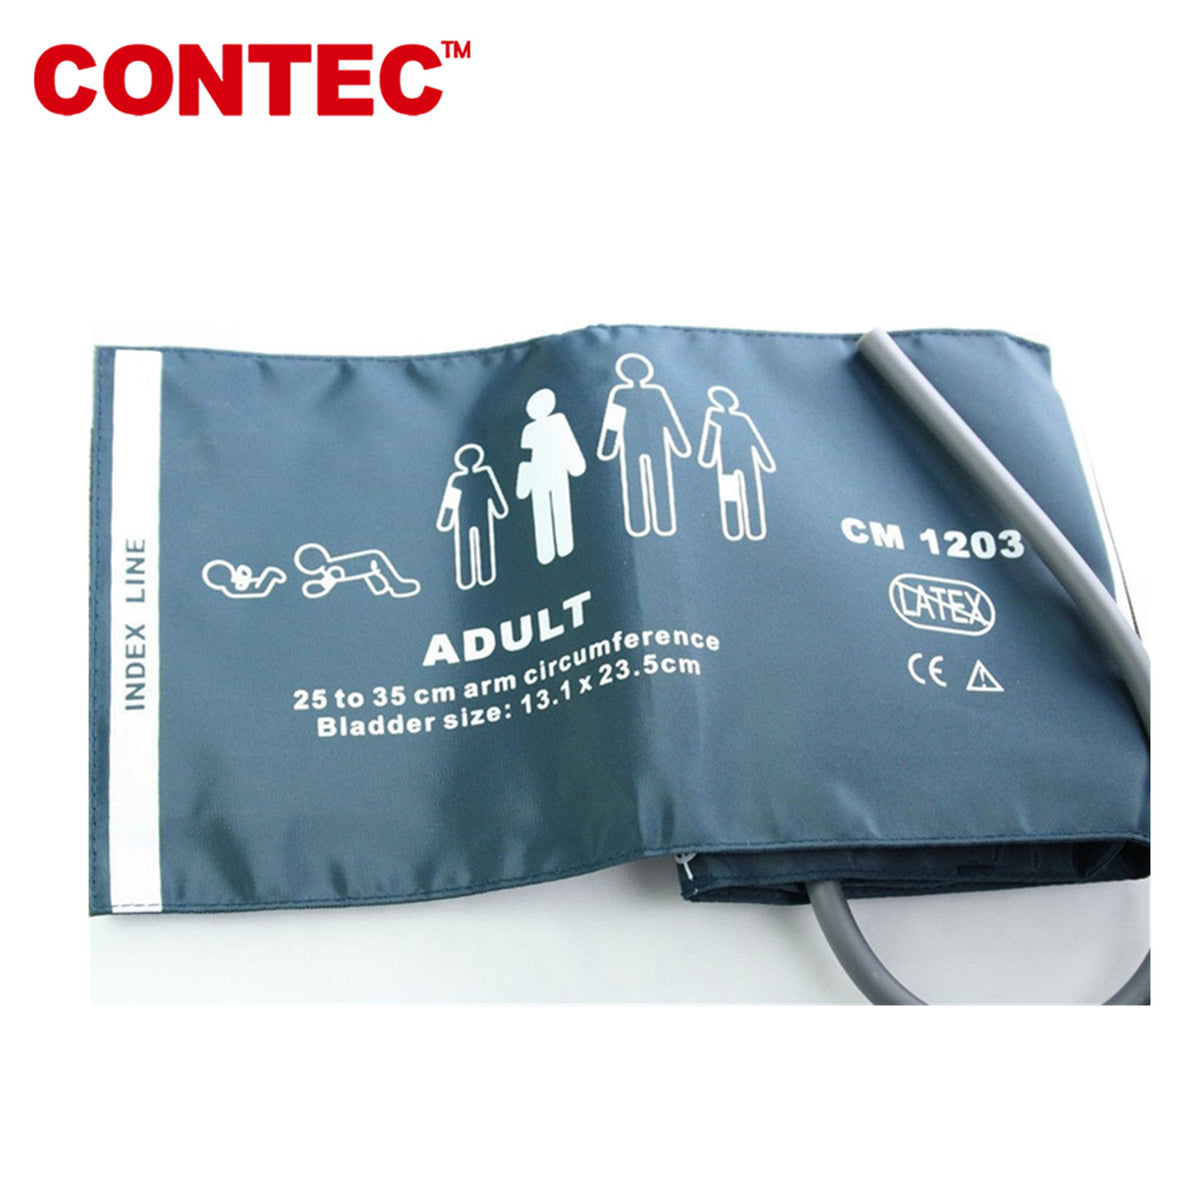 CONTEC Child Cuff 18 to 26 cm Pediatric single-tube cuff For Patient M